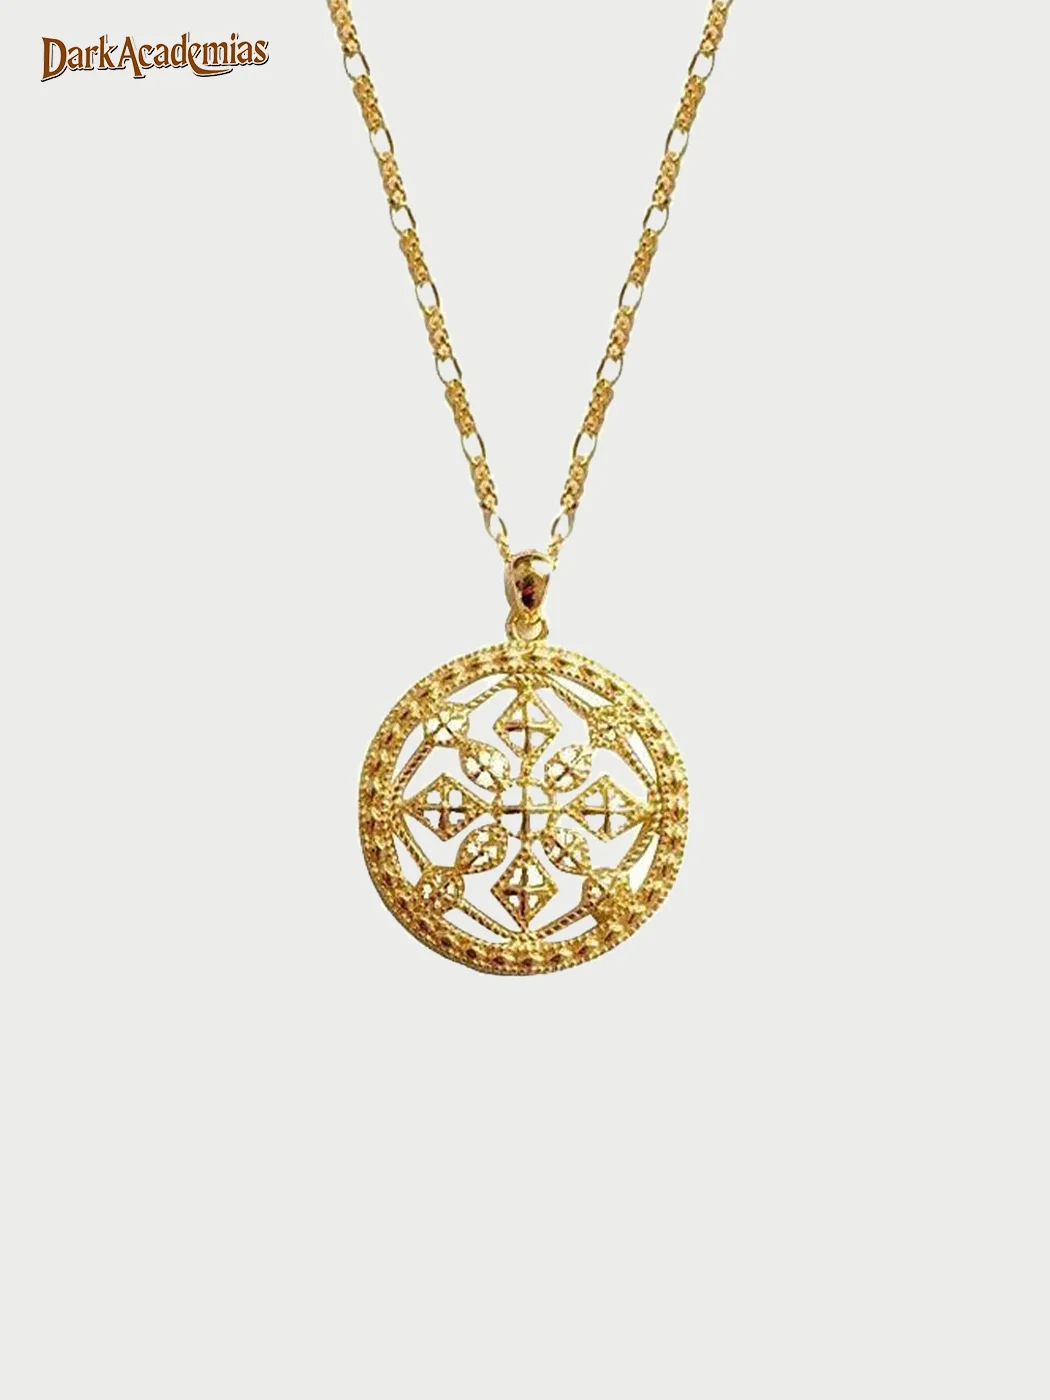 Vintage Astrolabe Necklace / DarkAcademias /Darkacademias